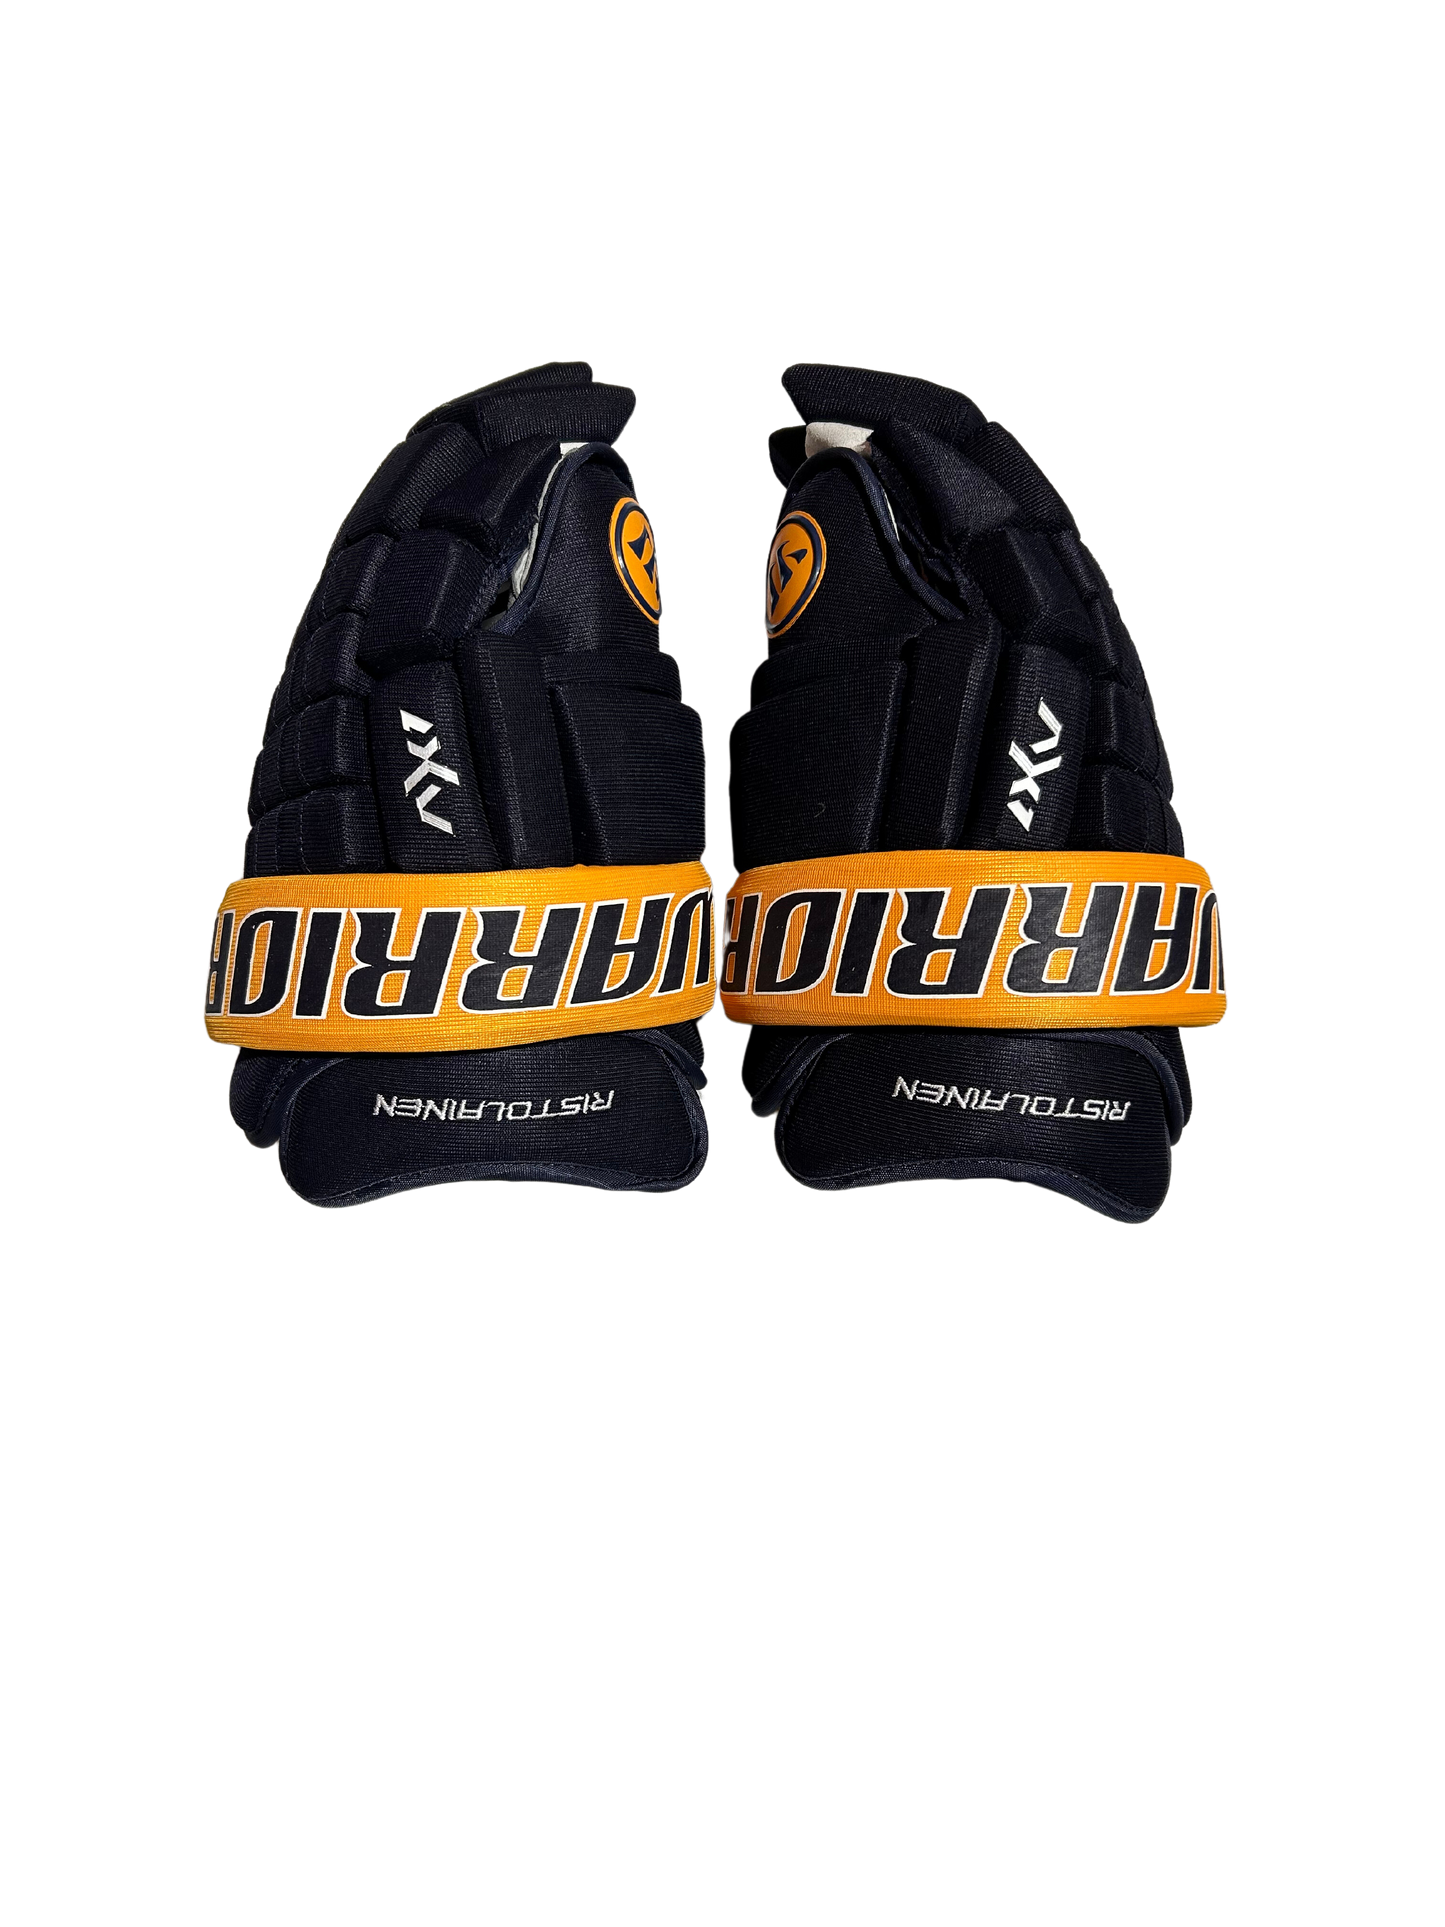 New Ristolainen Buffalo Sabres 14" Warrior AX1 Pro Gloves